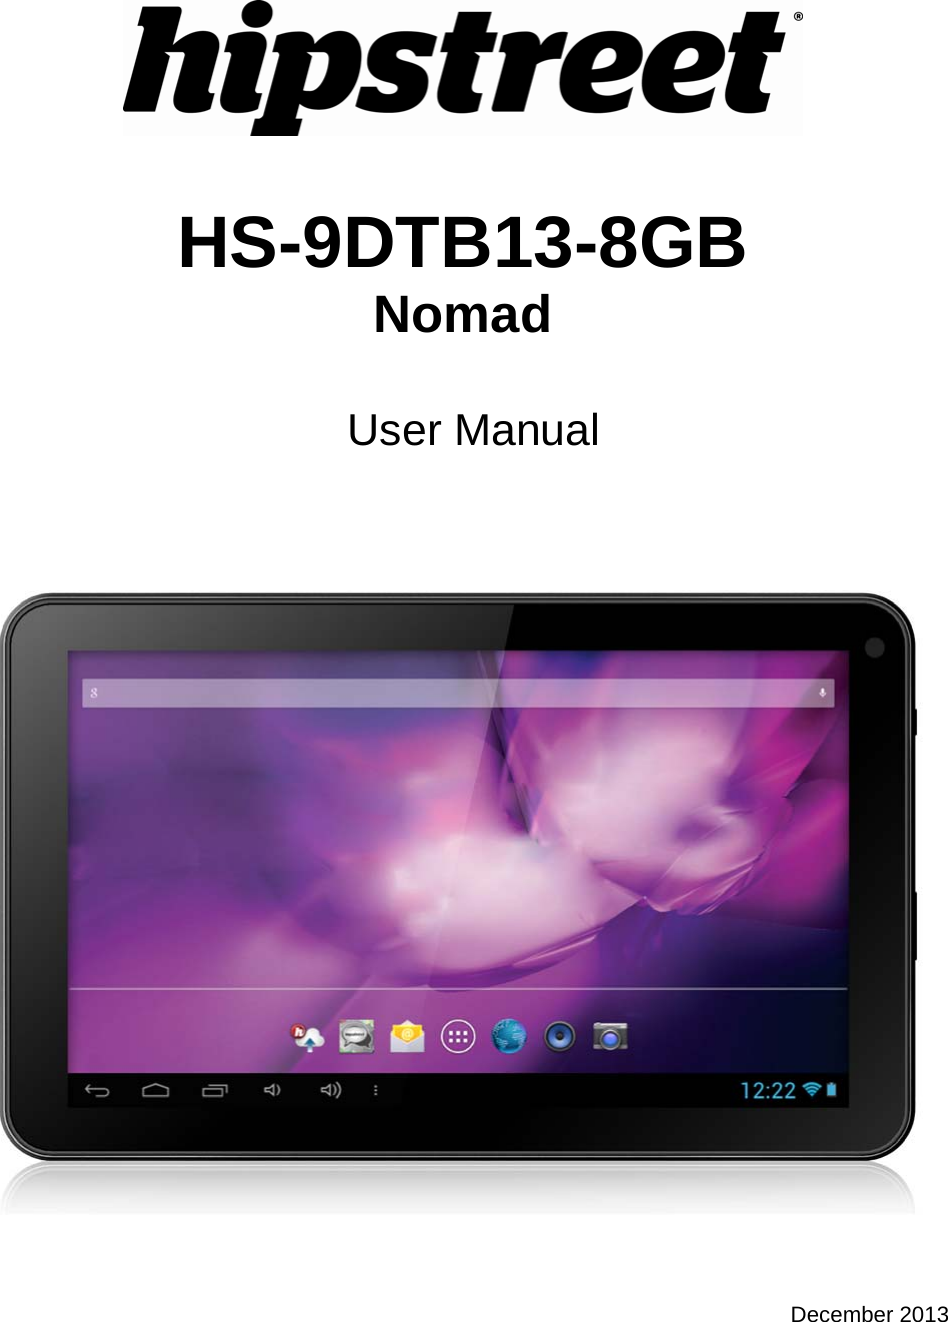    HS-9DTB13-8GB Nomad   User Manual      December 2013 